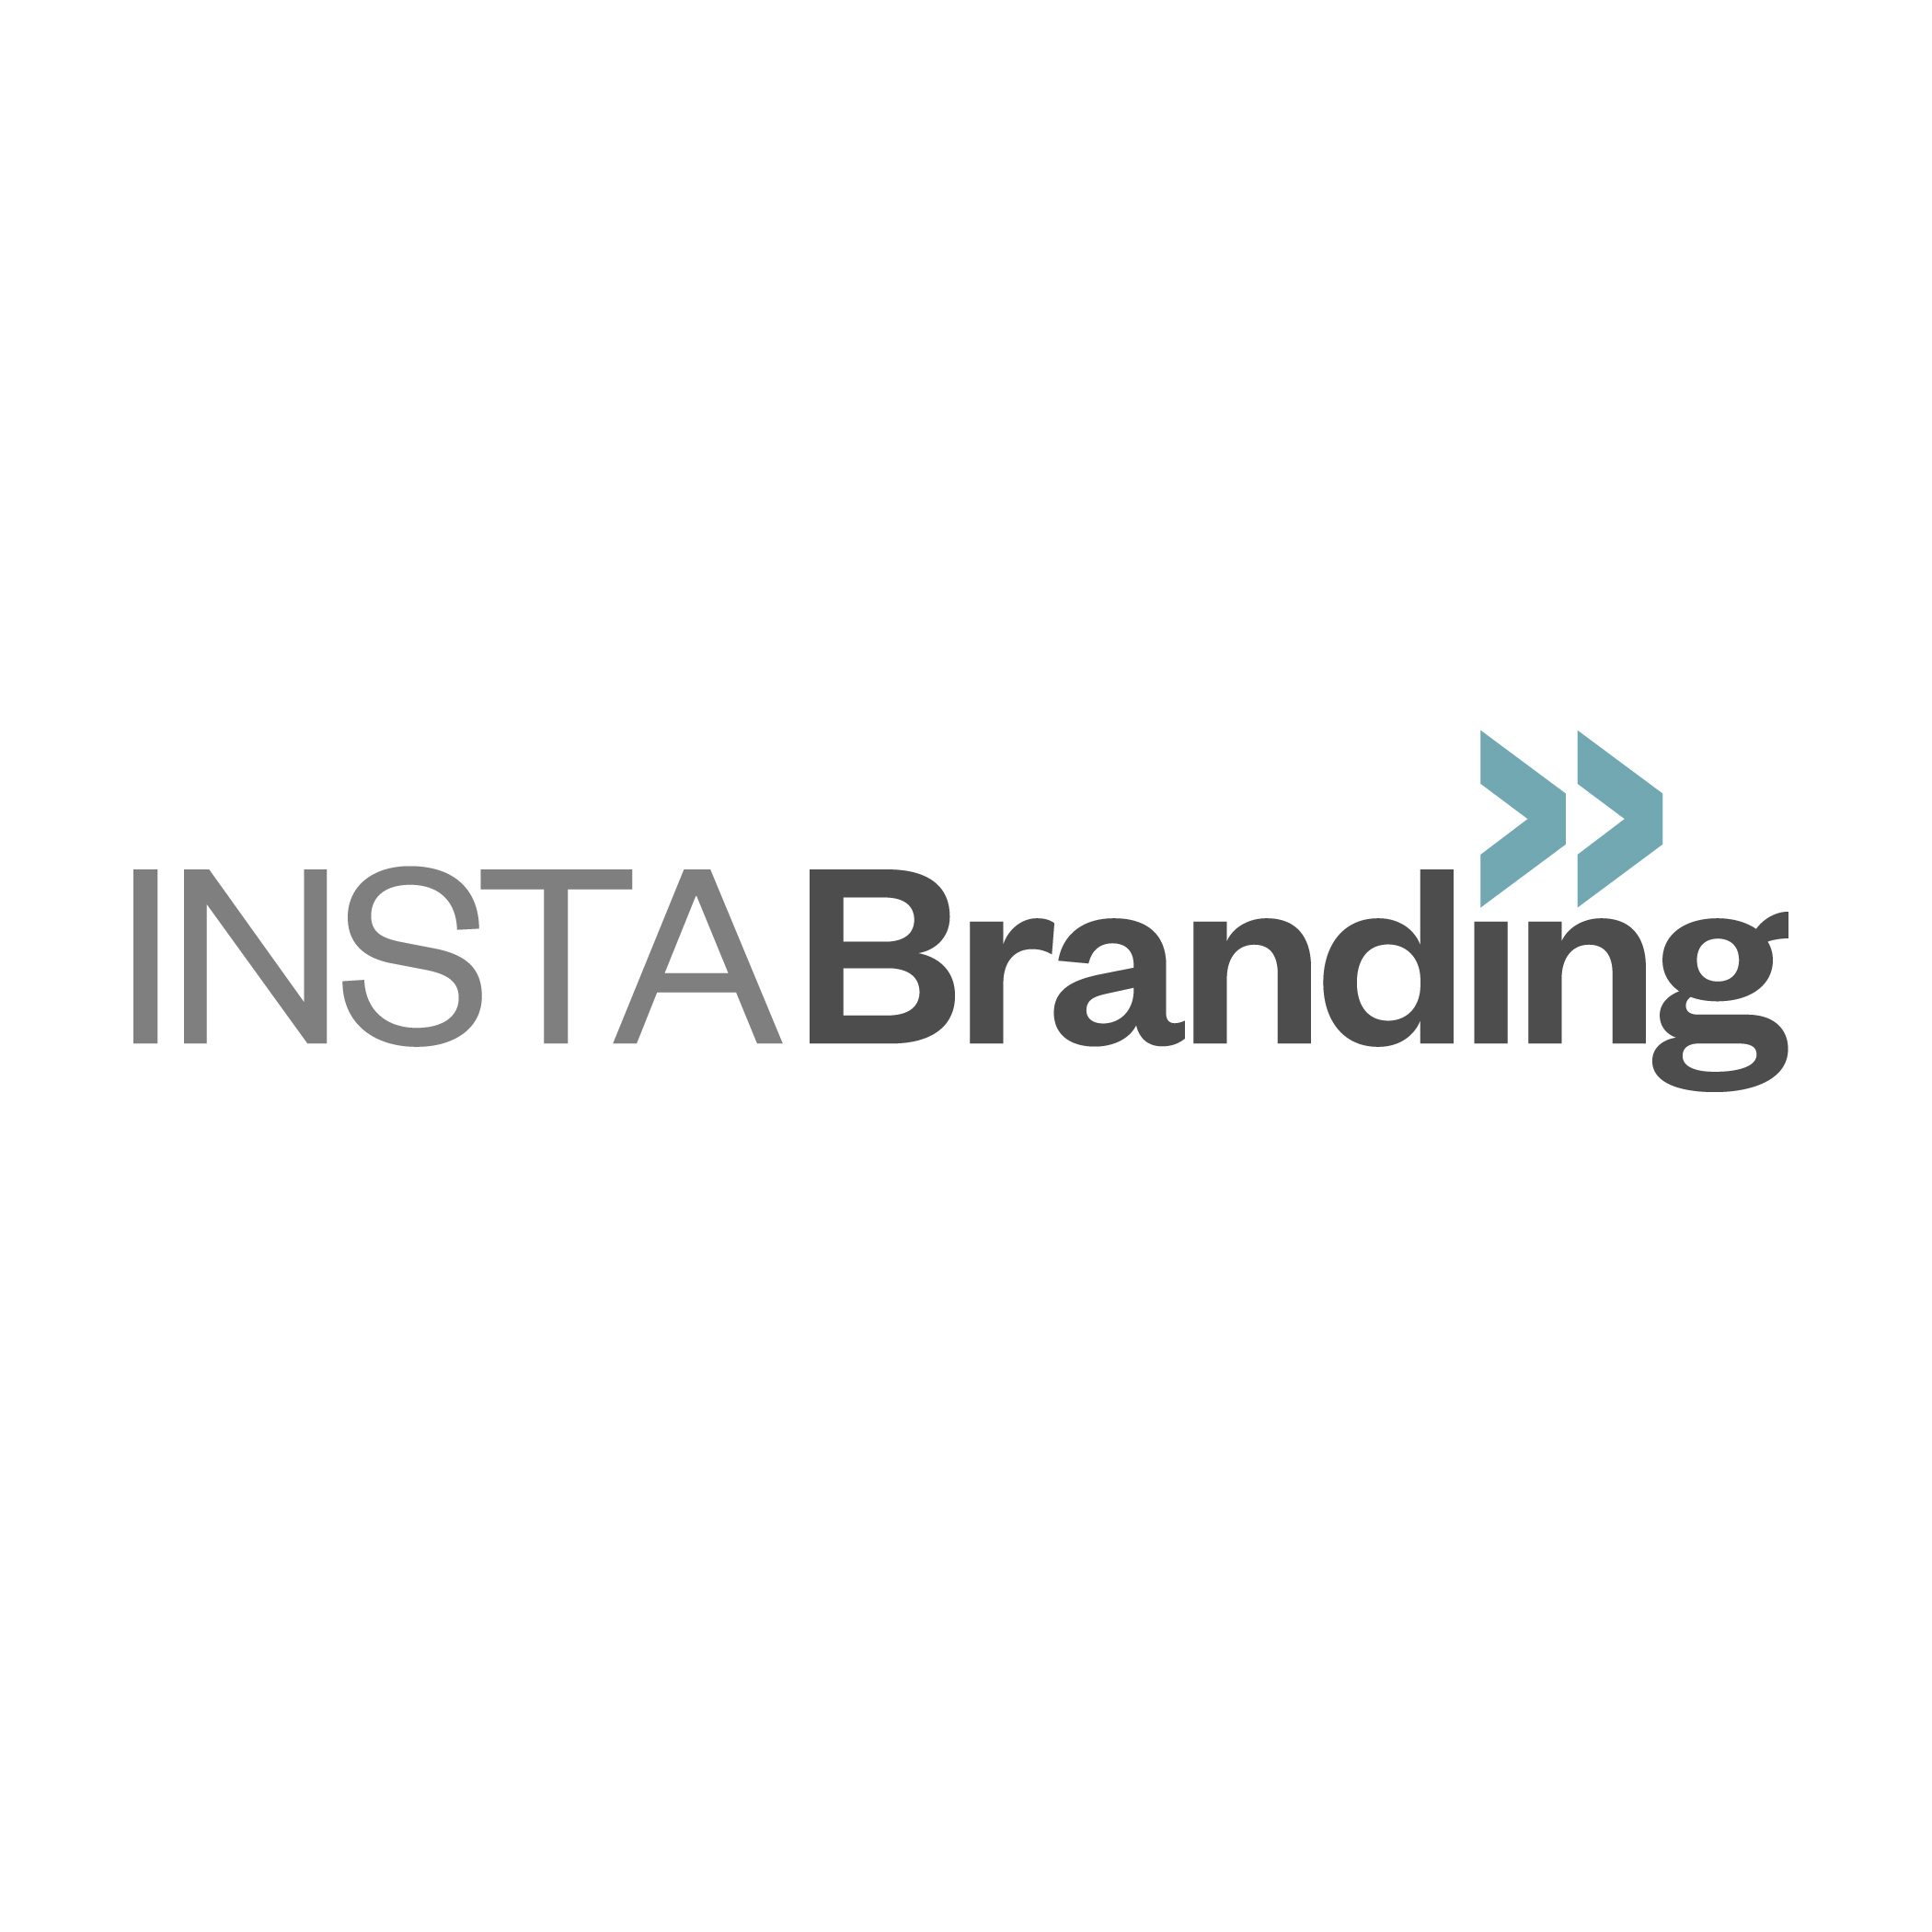 instabranding logo sandy hibbard creative social media product